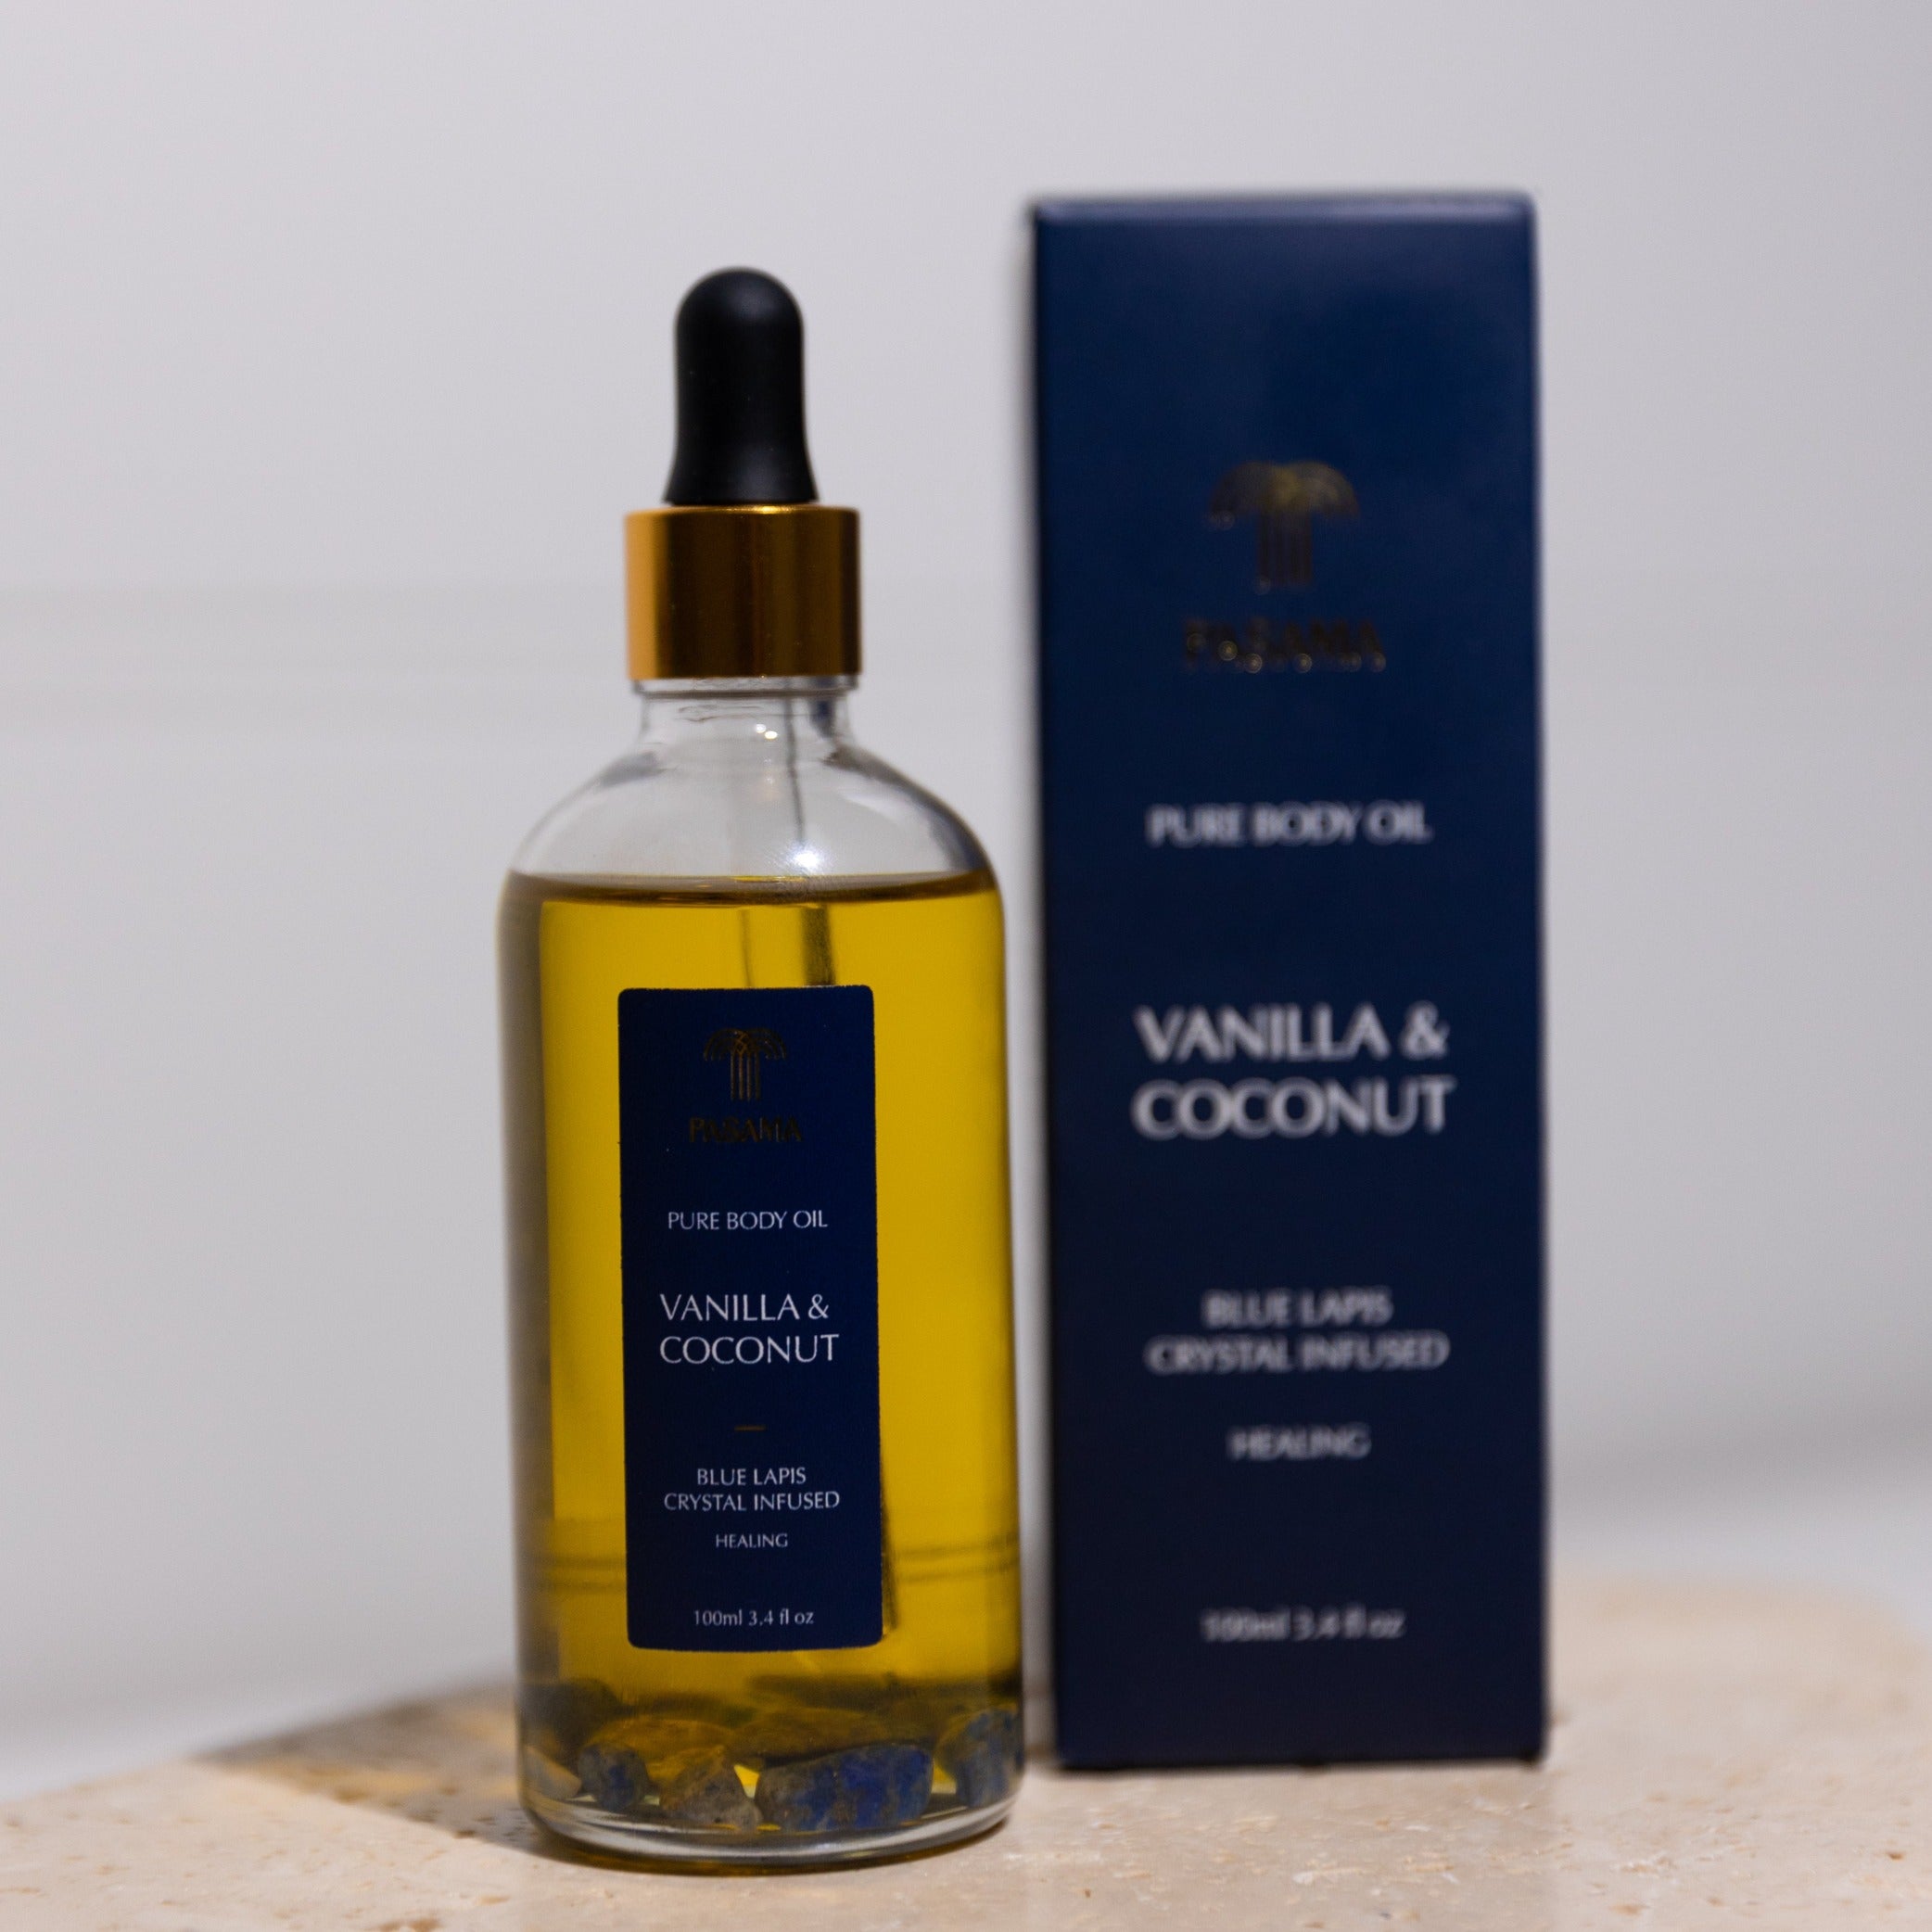 VANILLA AND COCONUT BODY OIL